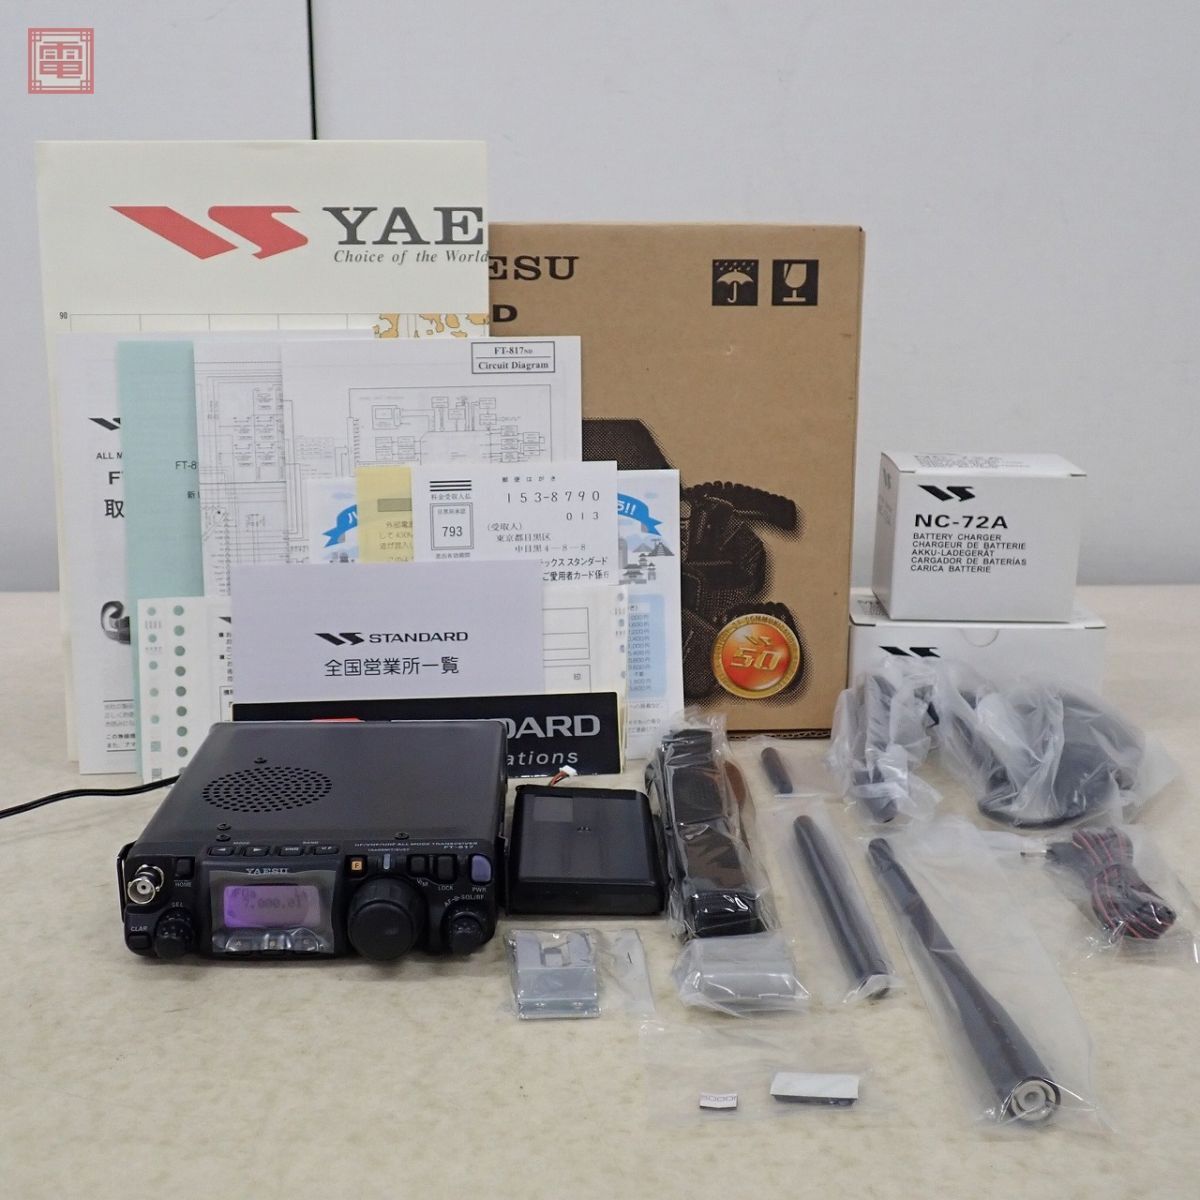  прекрасный товар Yaesu FT-817ND HF obi /50/144/430MHz 5W руководство пользователя * оригинальная коробка есть Yaesu [20